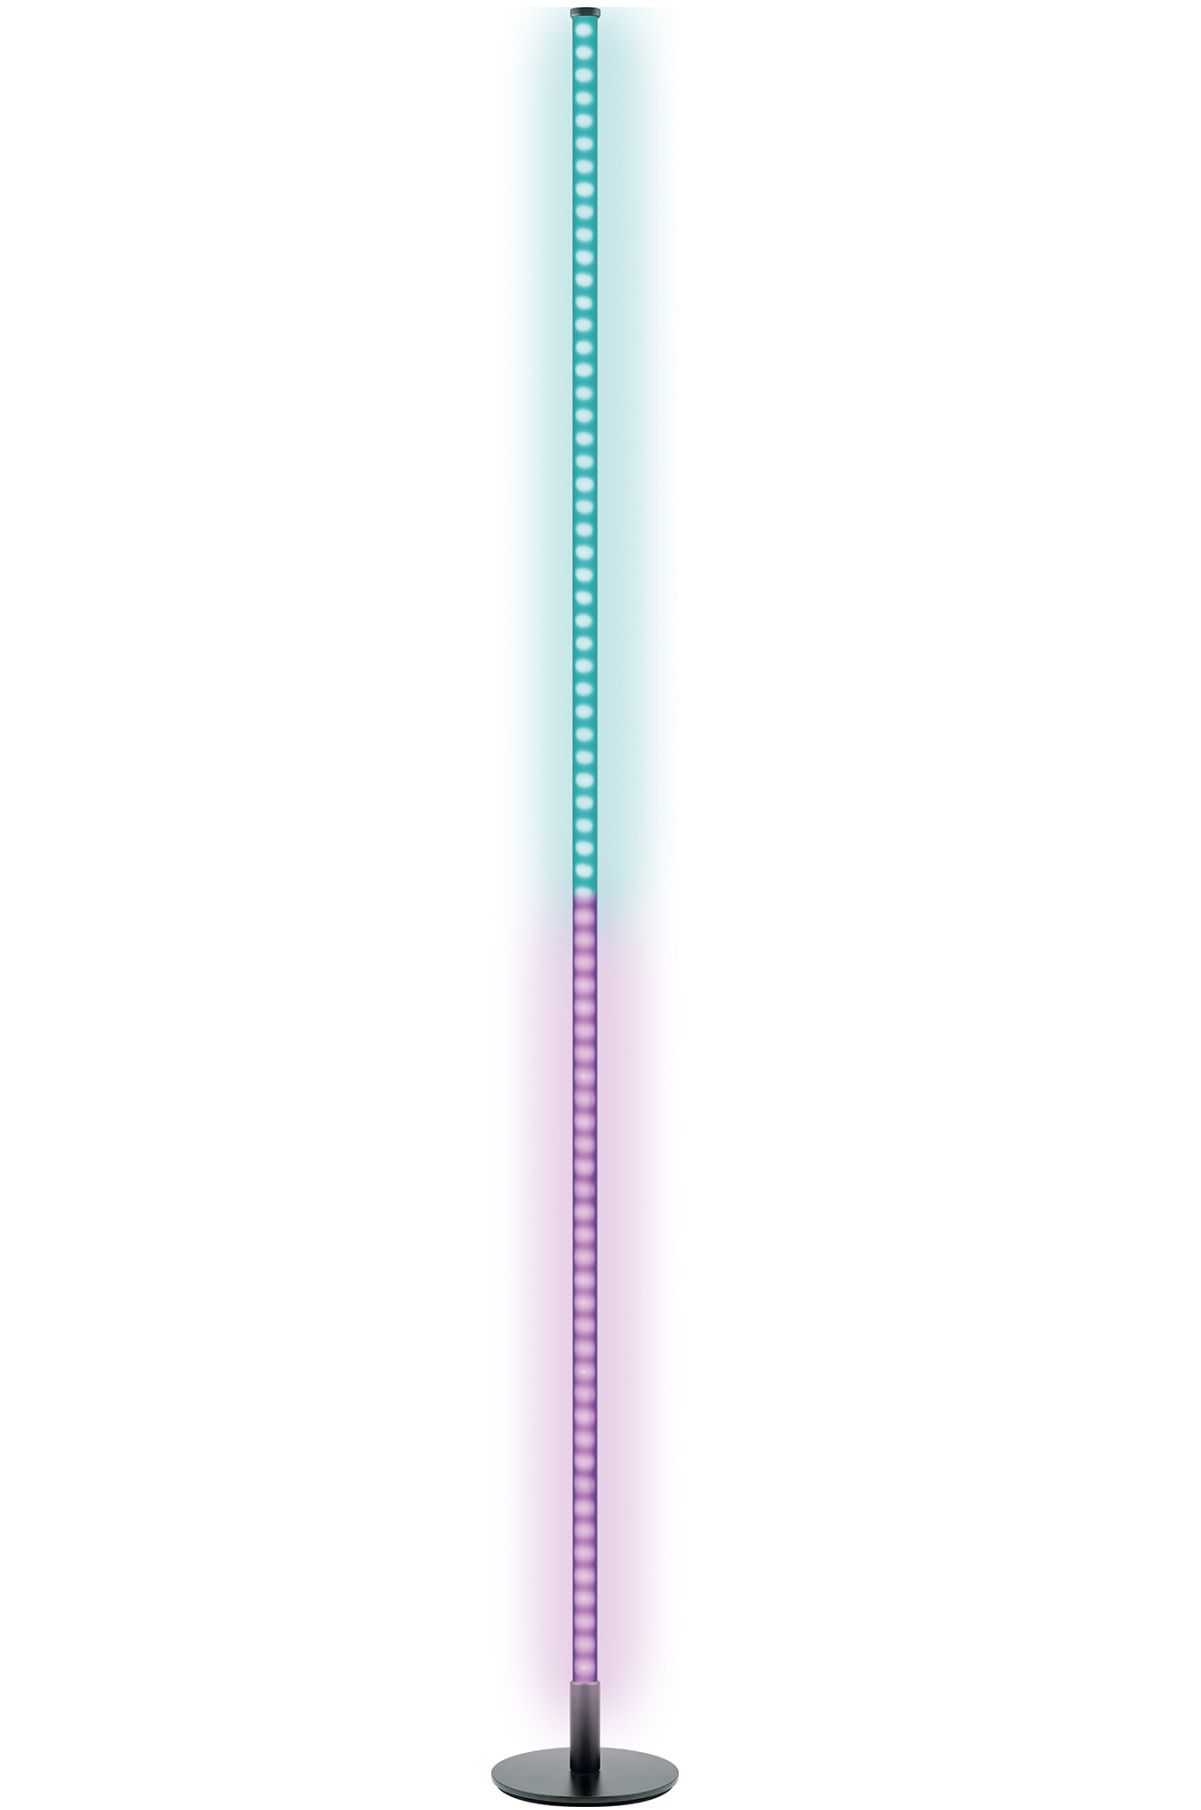 Farbwechseleffekt, Grün, inkl. etc. -STL358 Pink, Stehleuchte mit Blau, Orange, Gelb, 013- SCHWAIGER Fernbedienung dimmbar,